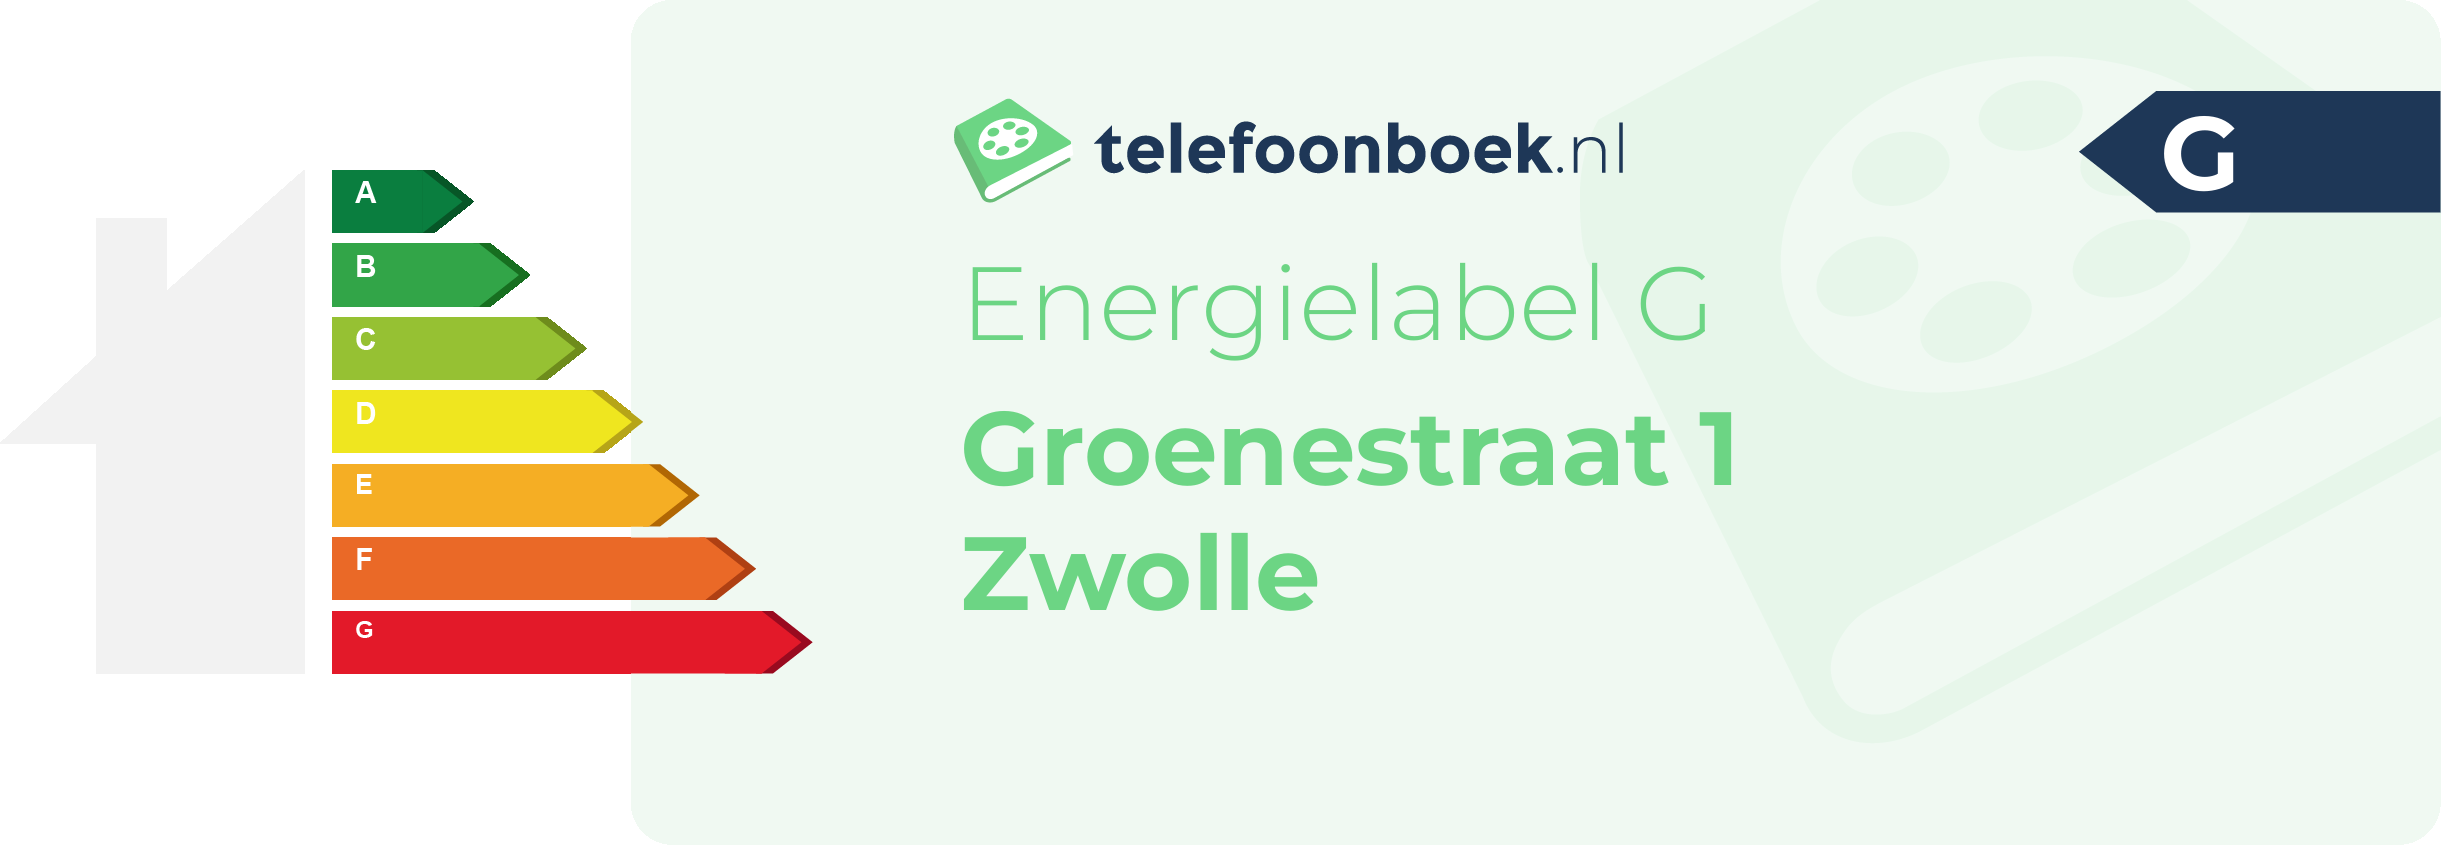 Energielabel Groenestraat 1 Zwolle